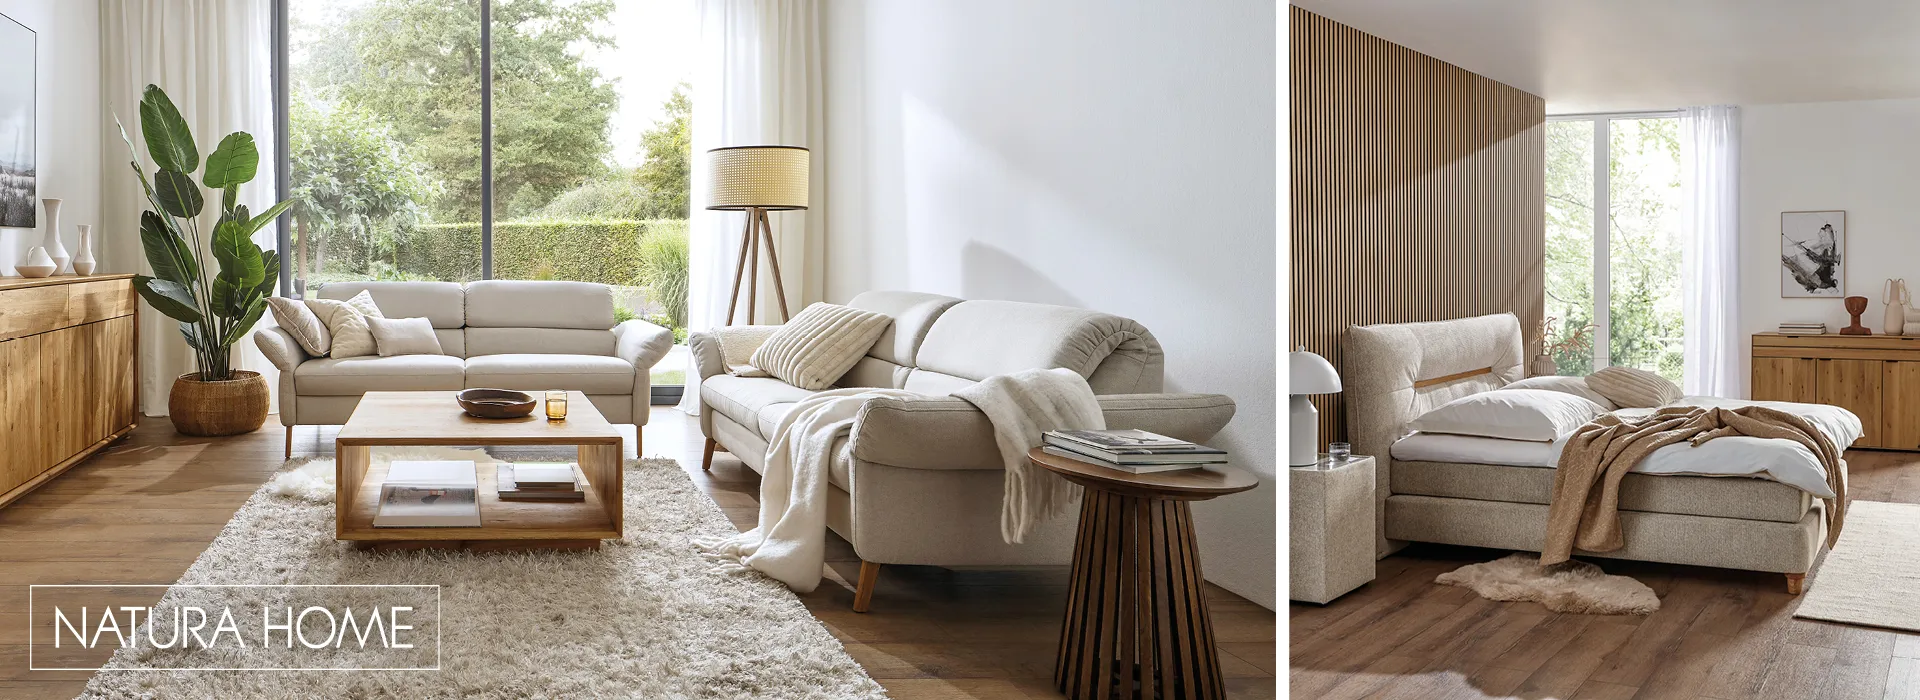 NATURA HOME Möbel für Wohnzimmer, Schlafzimmer und Esszimmer bringen Ruhe und Gemütlichkeit in die Wohnung.